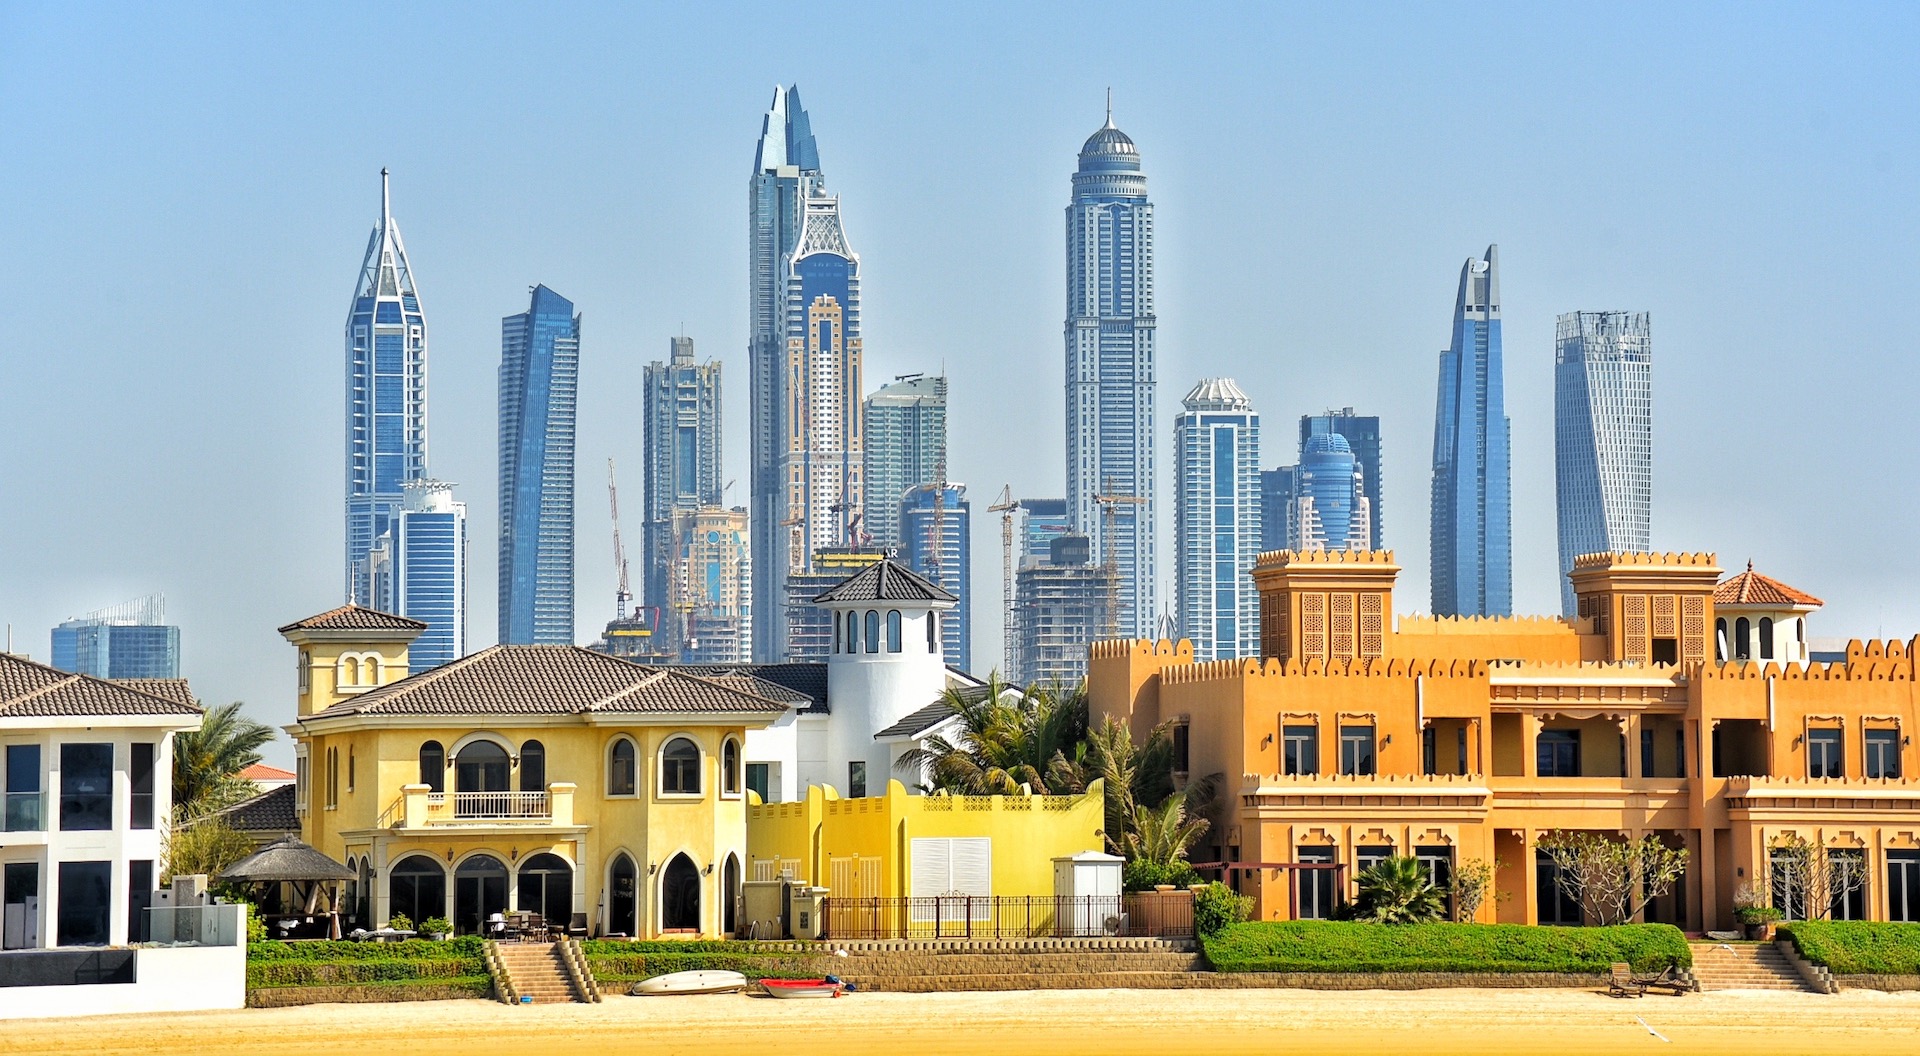 Suburban and cityscapes in Dubai